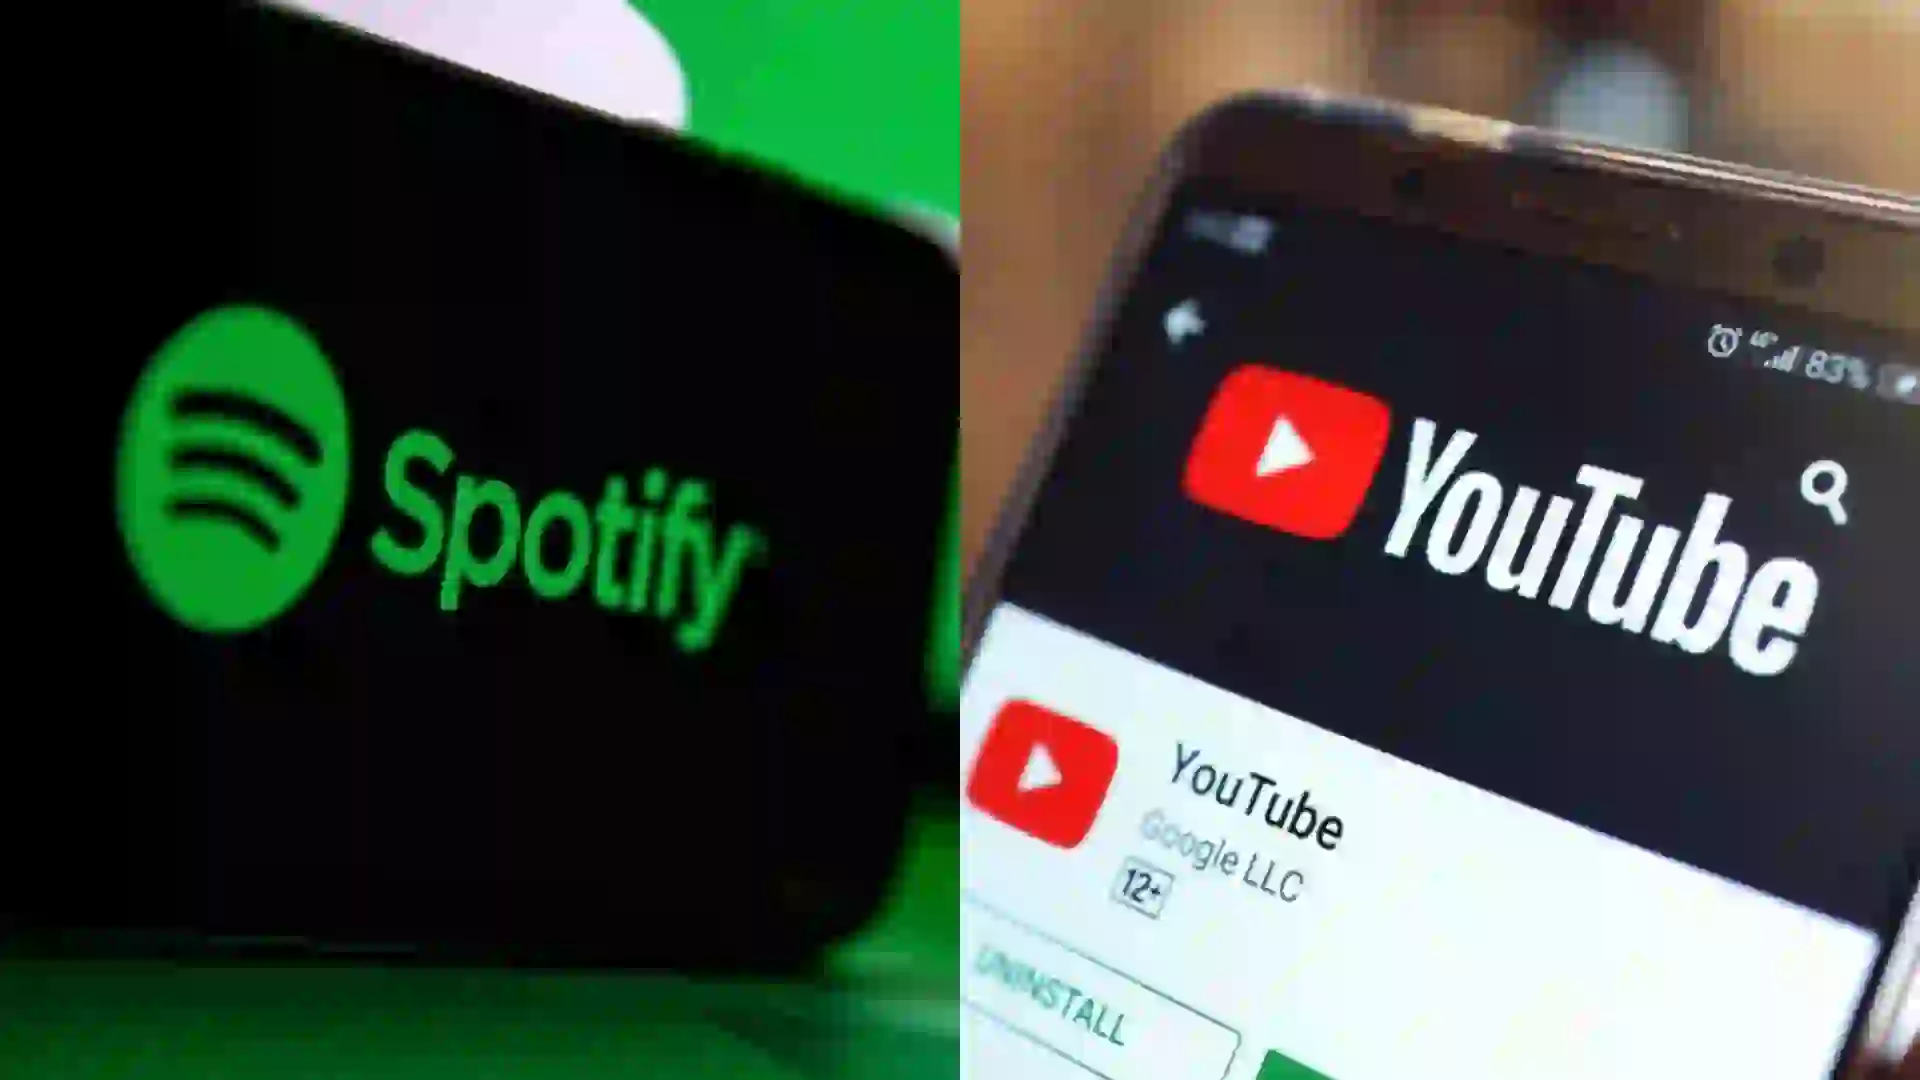 YouTube vs Spotify